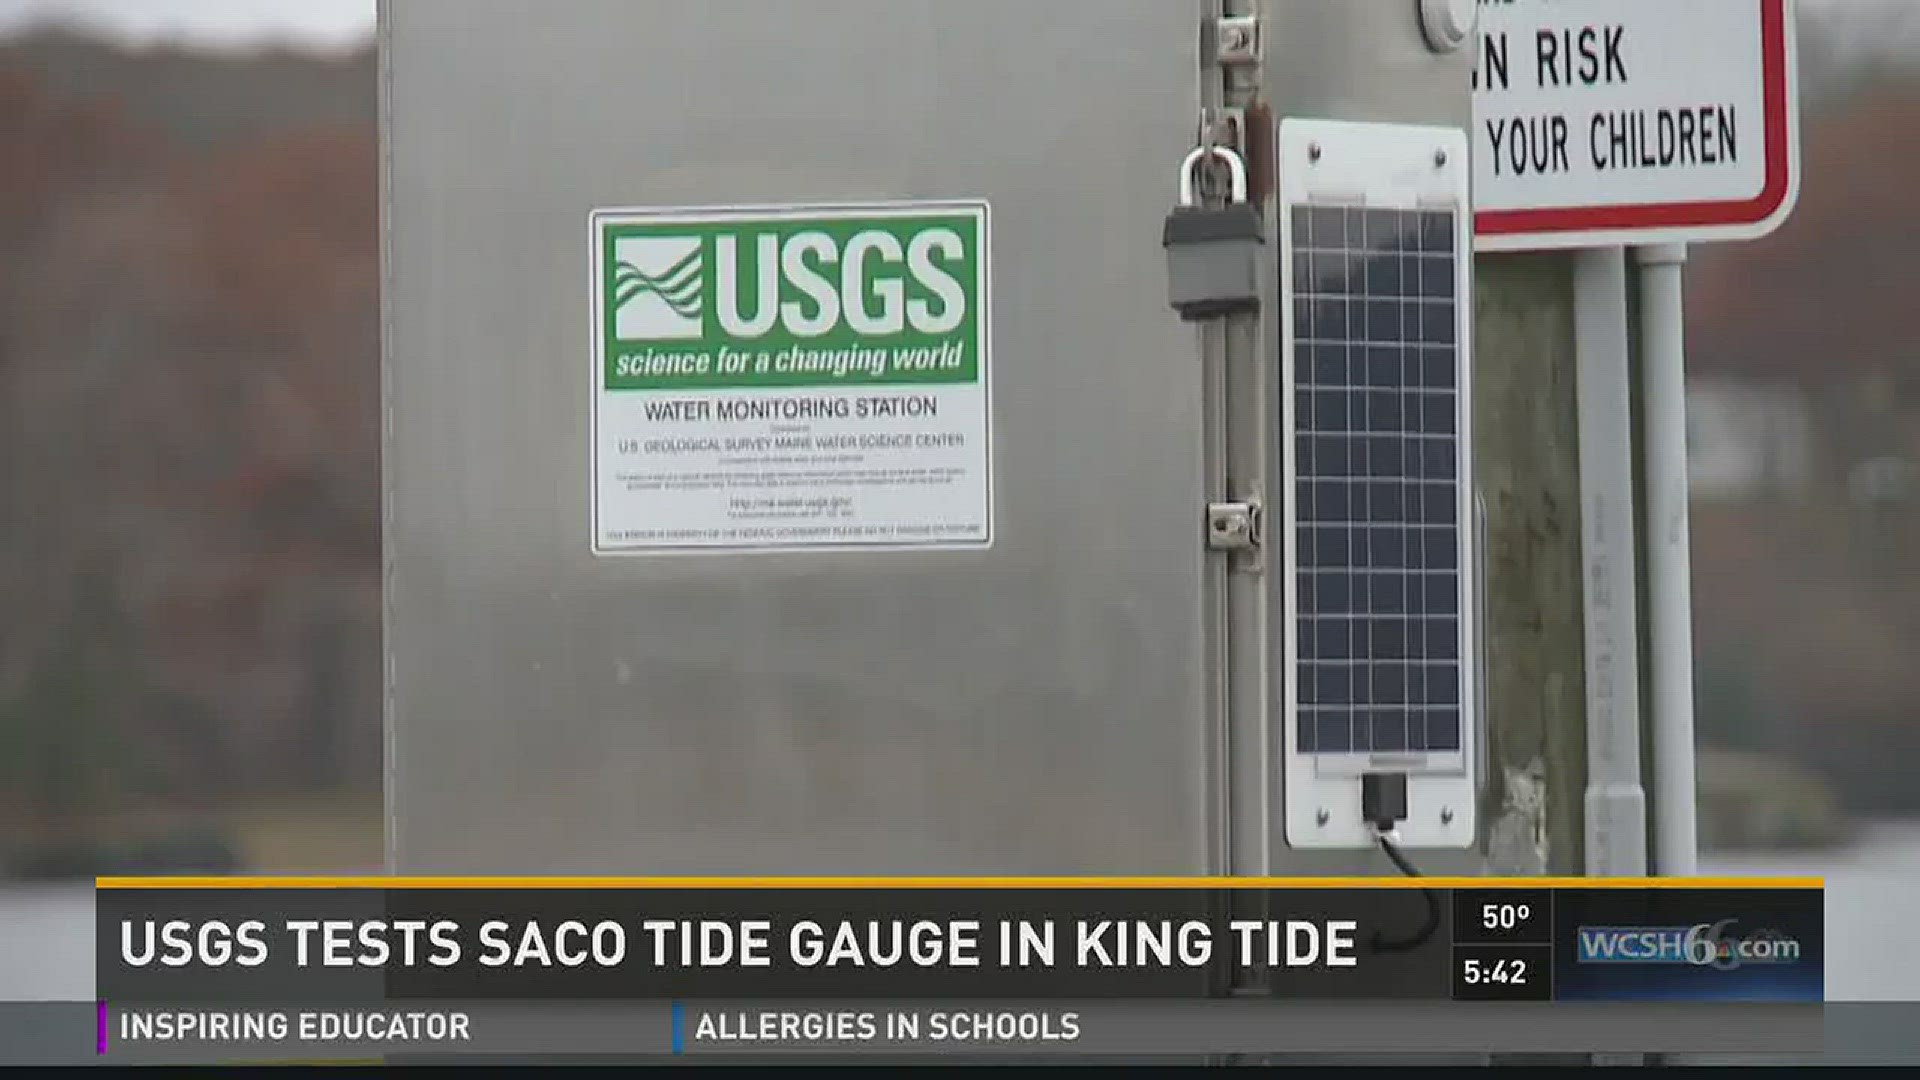 USGS tests Saco tide gauge in king tide